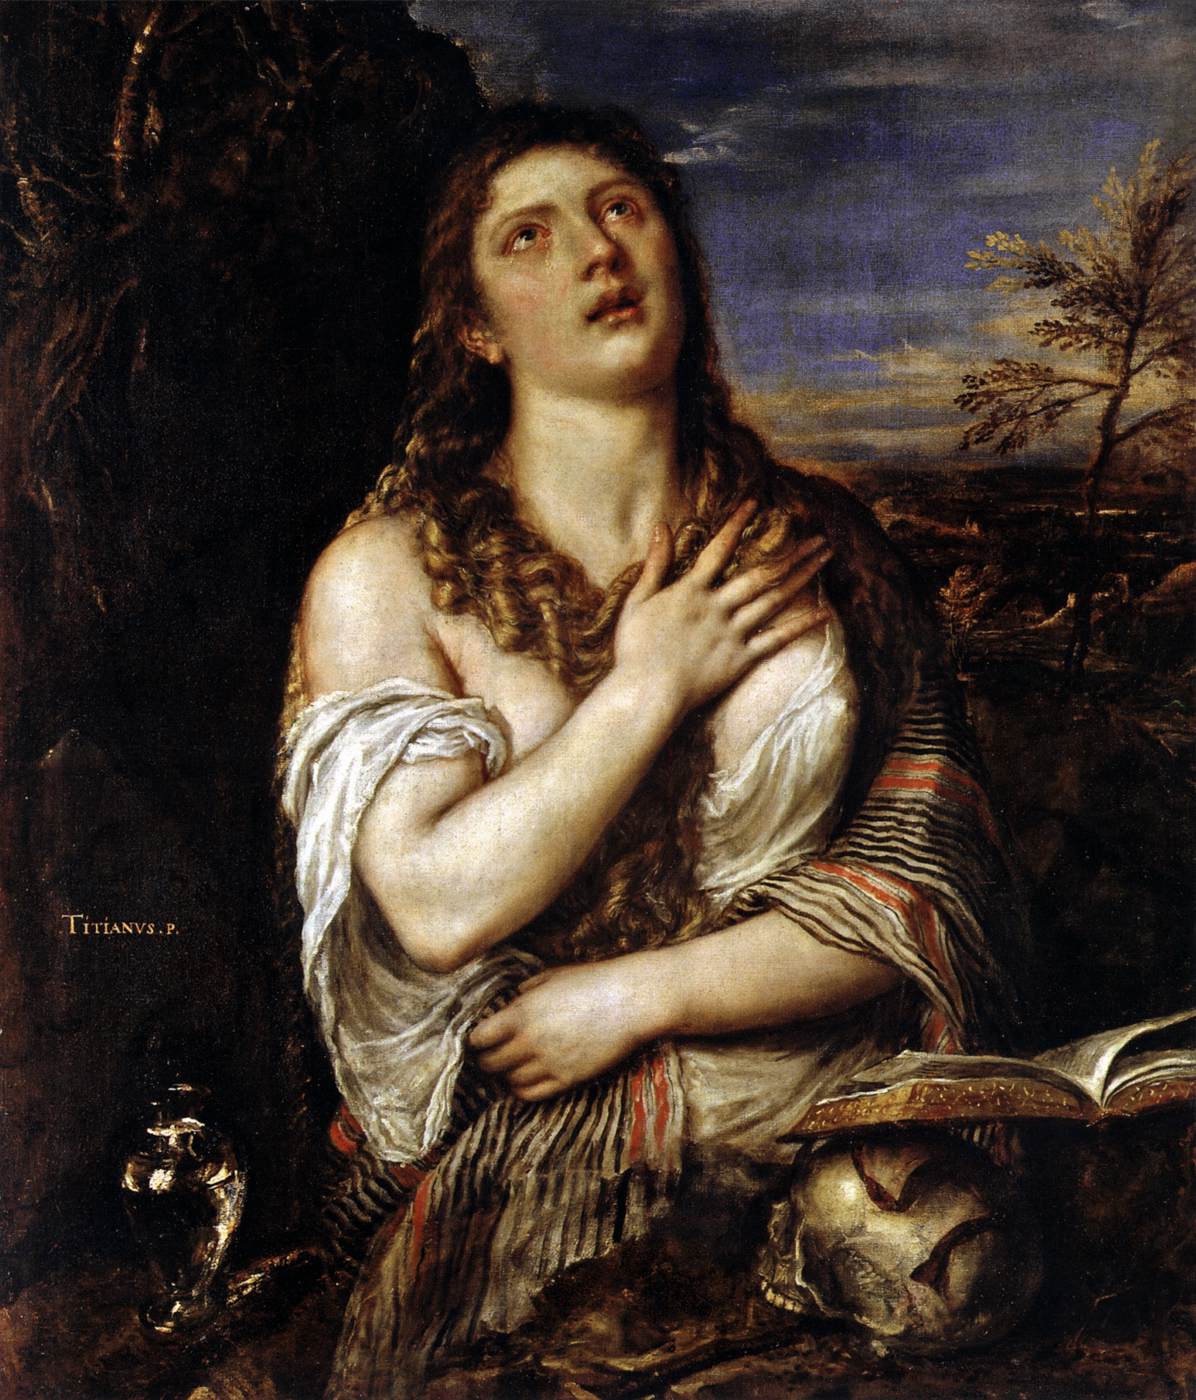 Penitent Saint Mary Magdalene